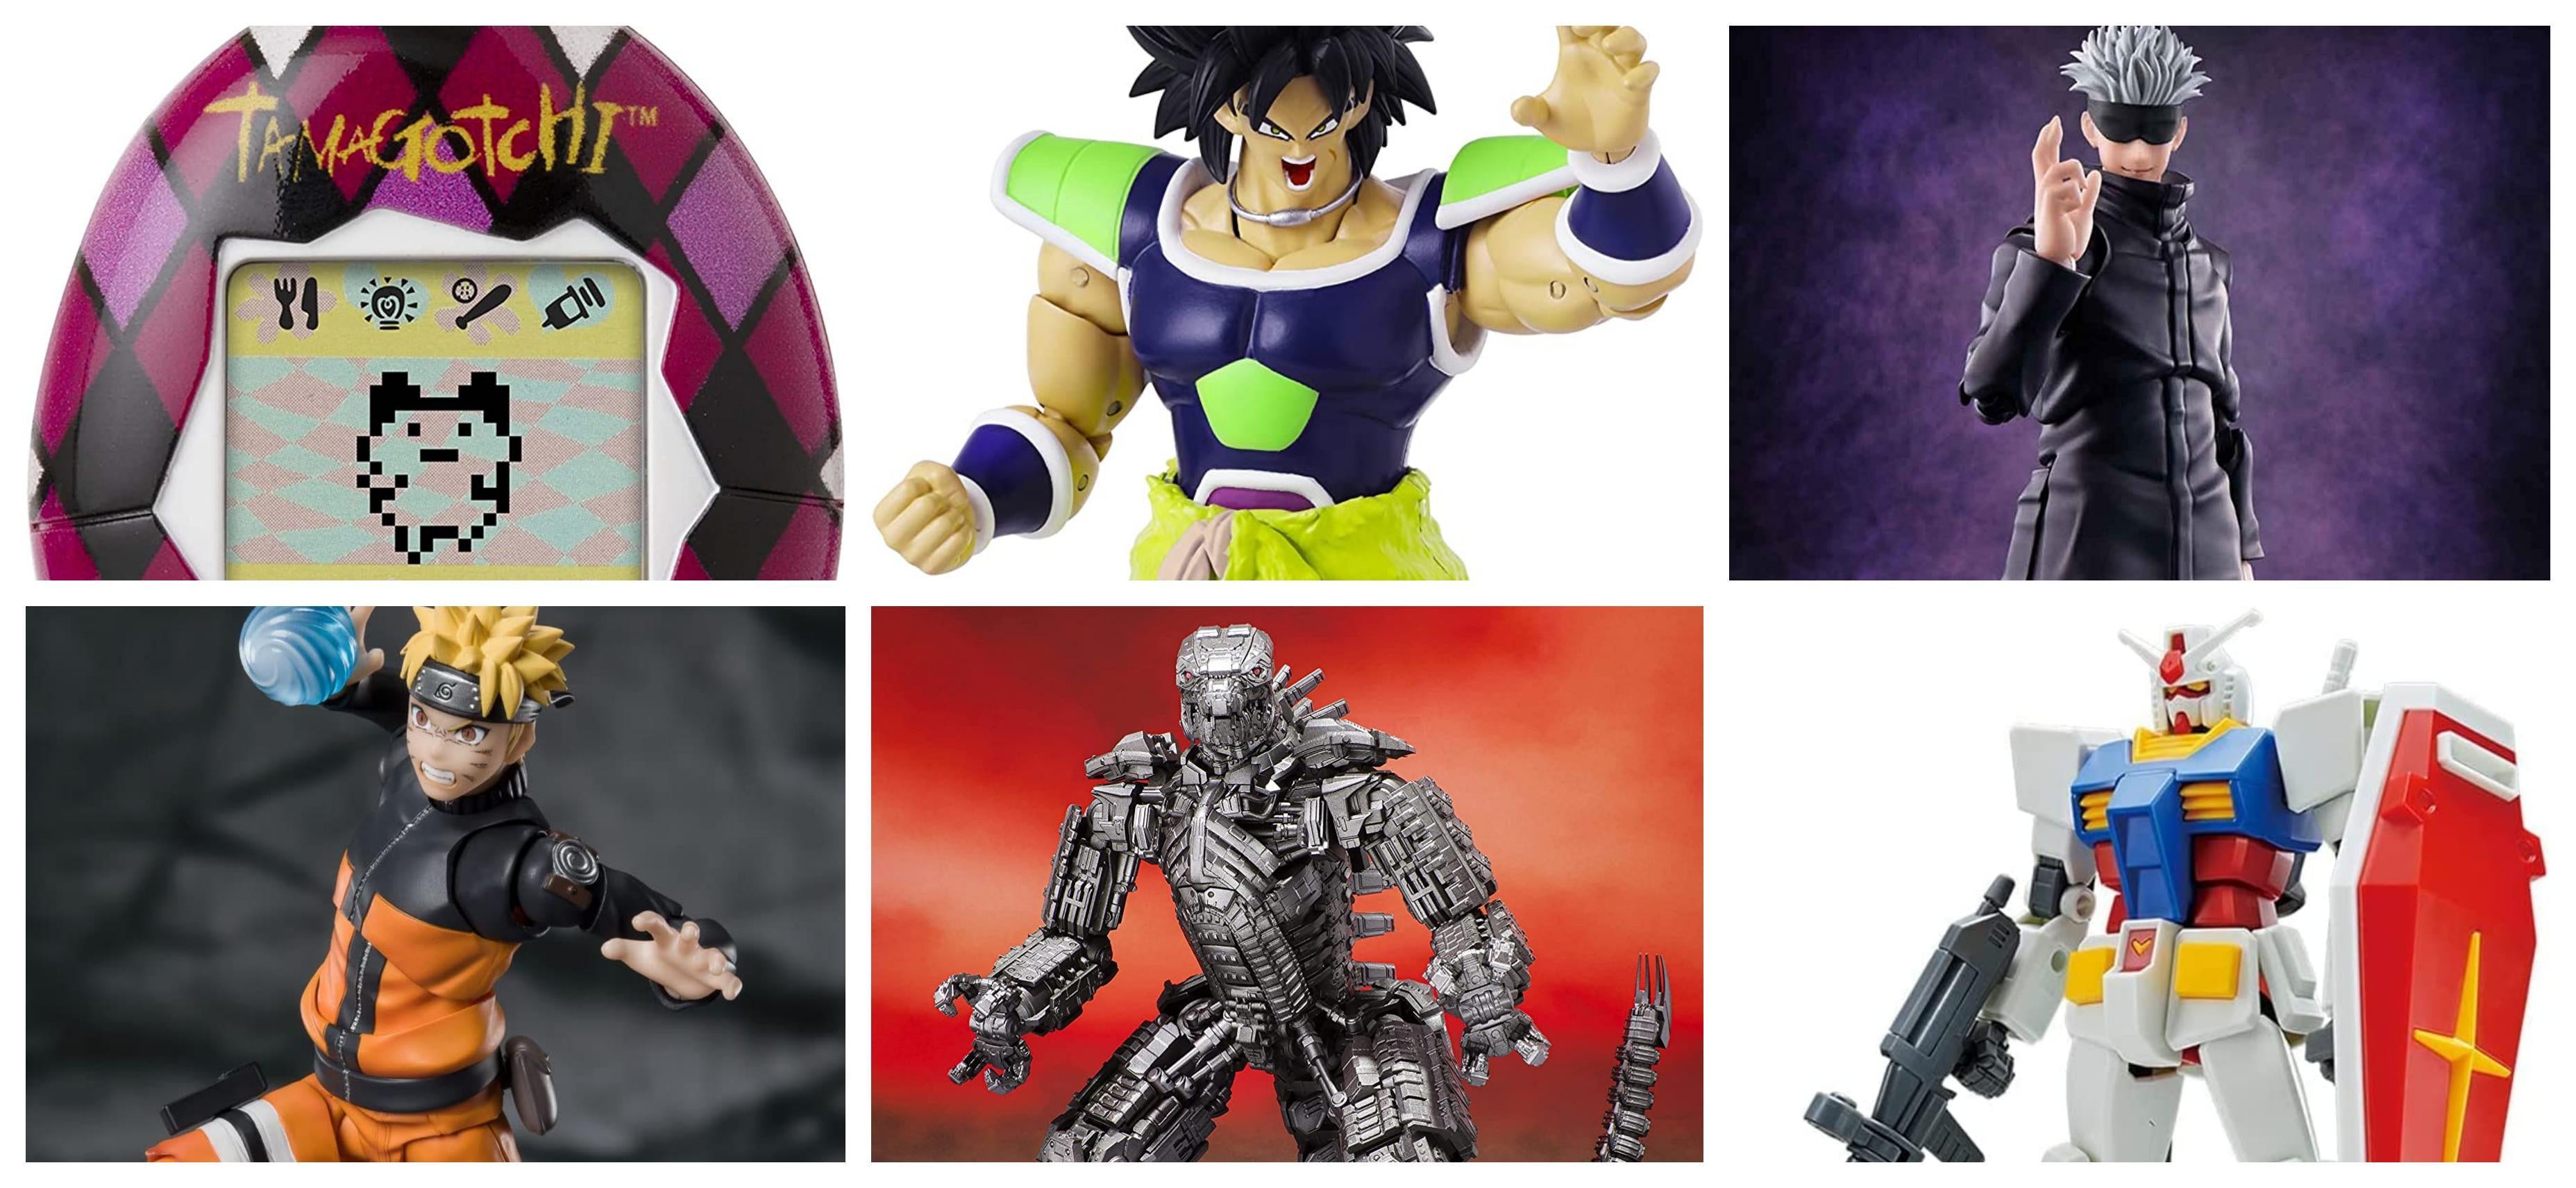 9 My Hero Academia Figures Toy Anime Figures - Walmart.com